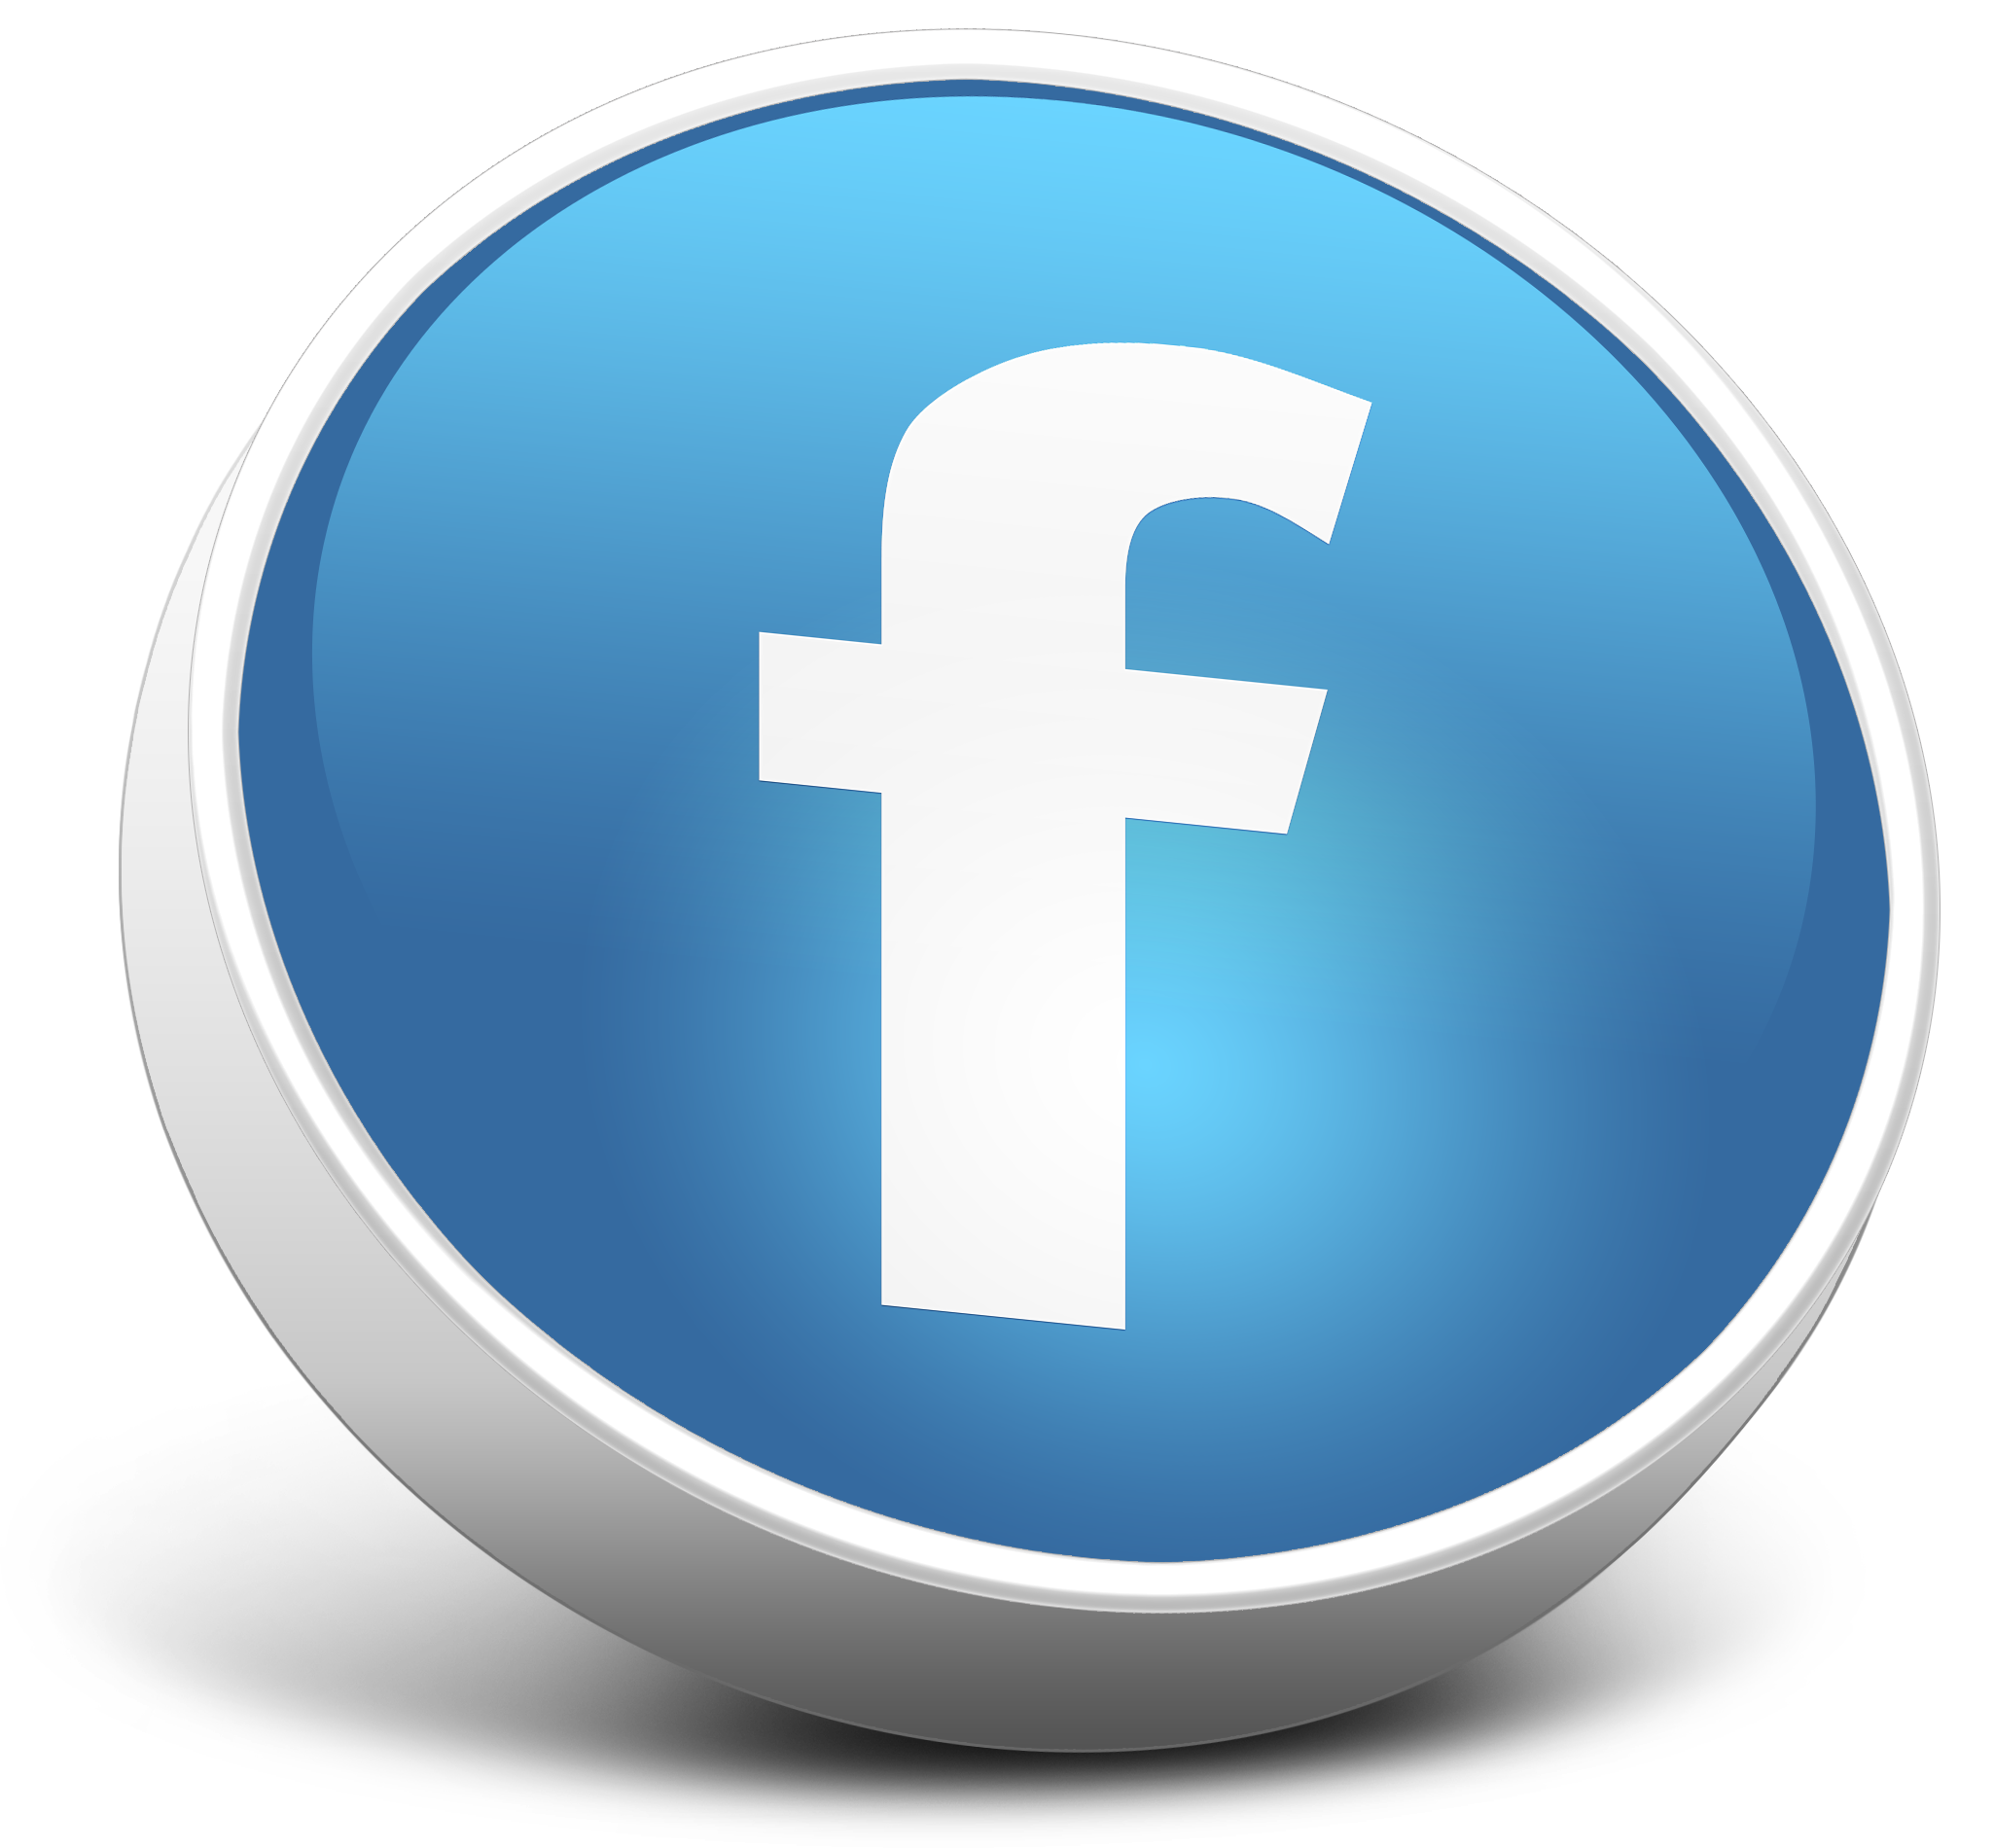 facebook logo png transparent background